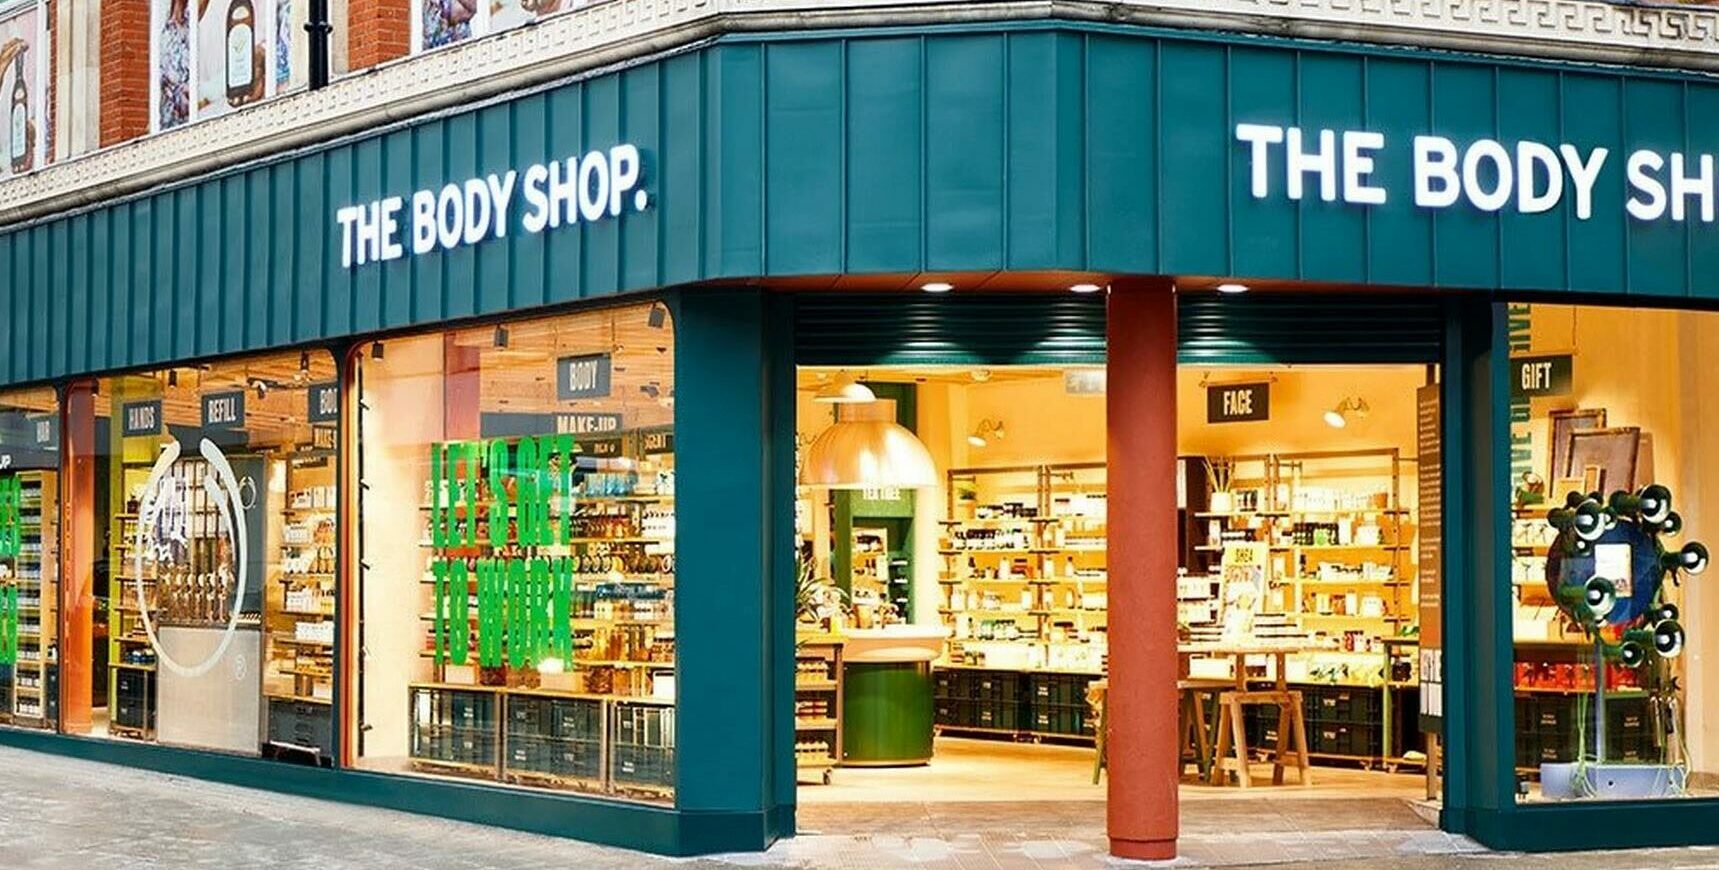 Κατάστημα Body Shop © www.thebodyshop.com